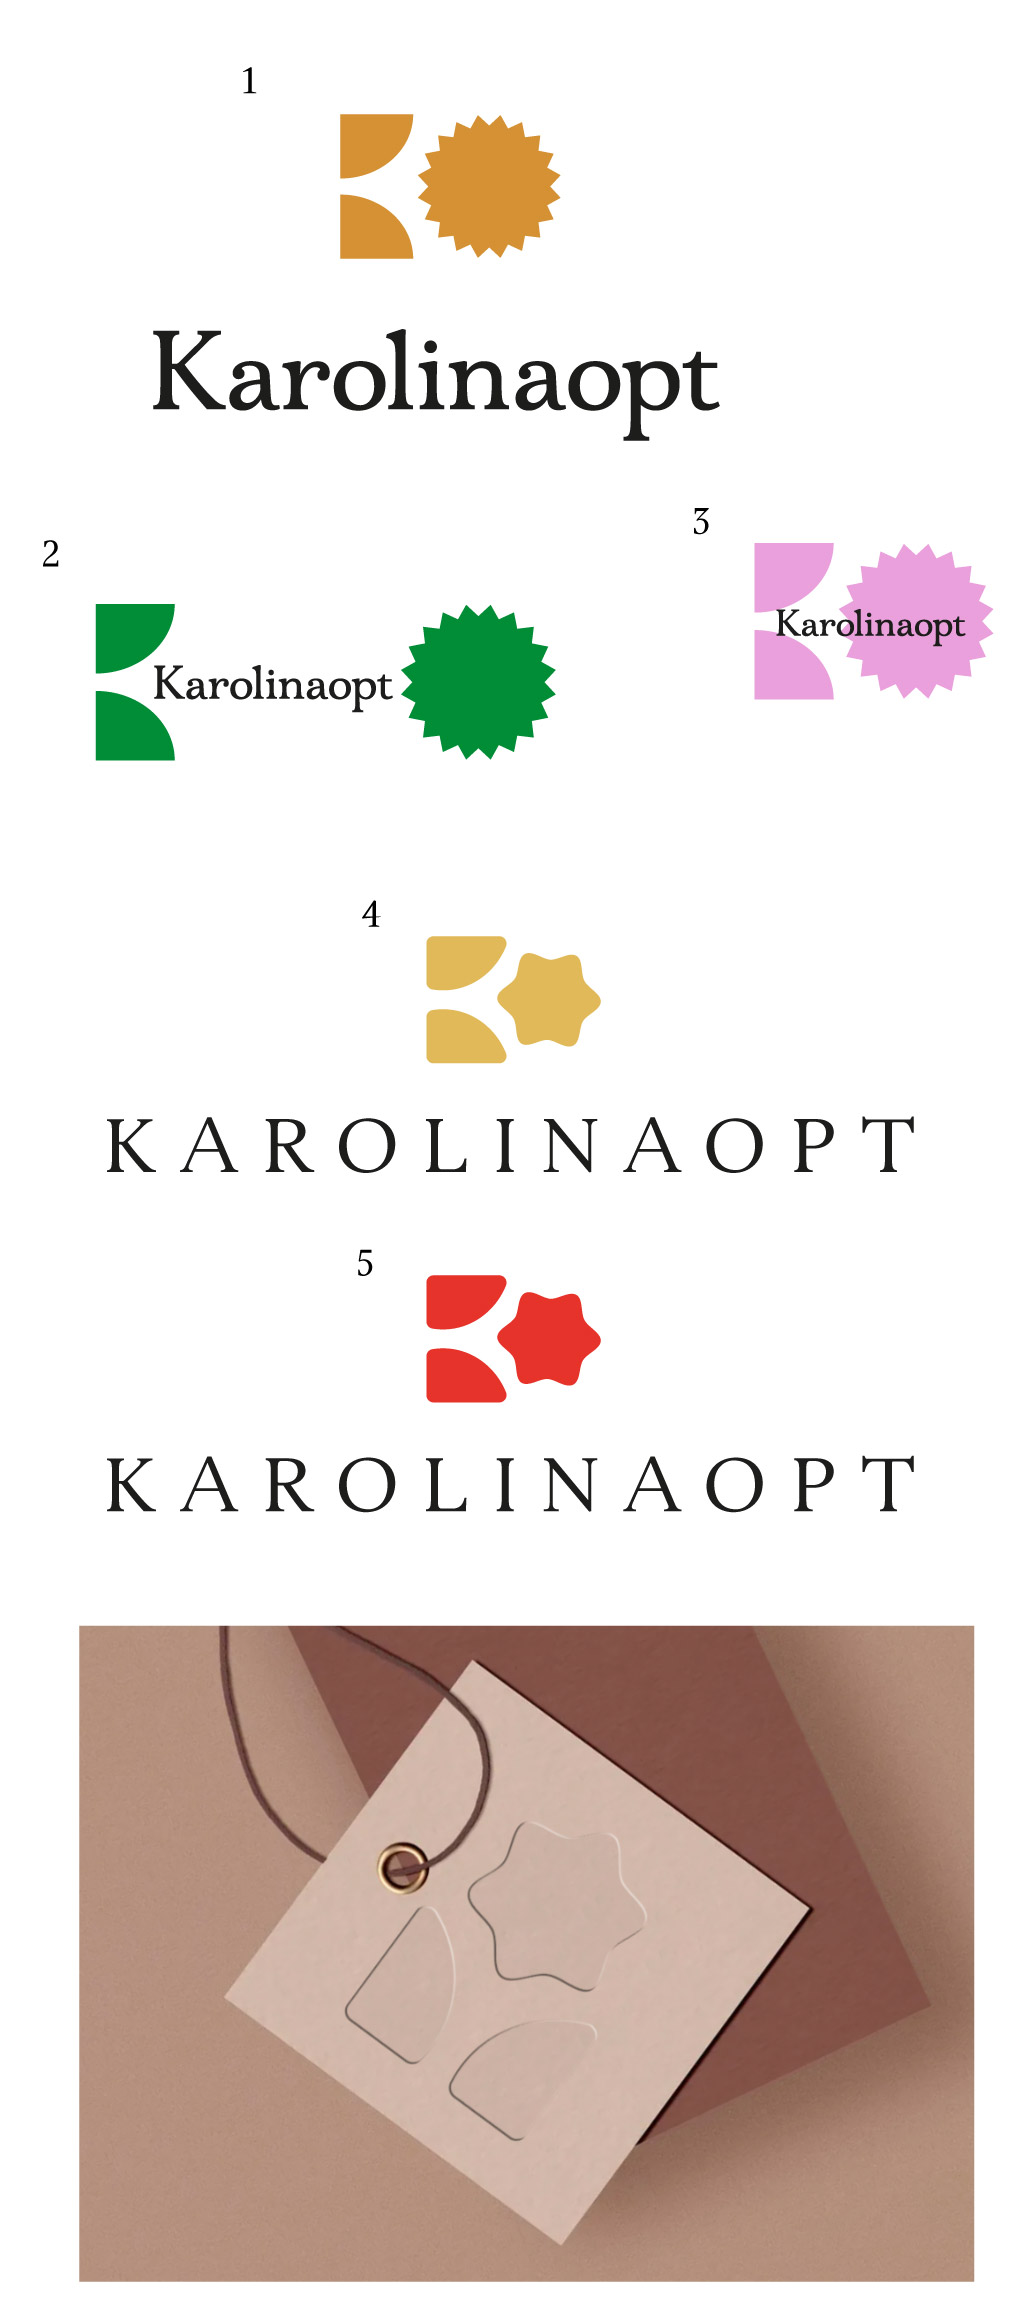 karolinaopt process 01